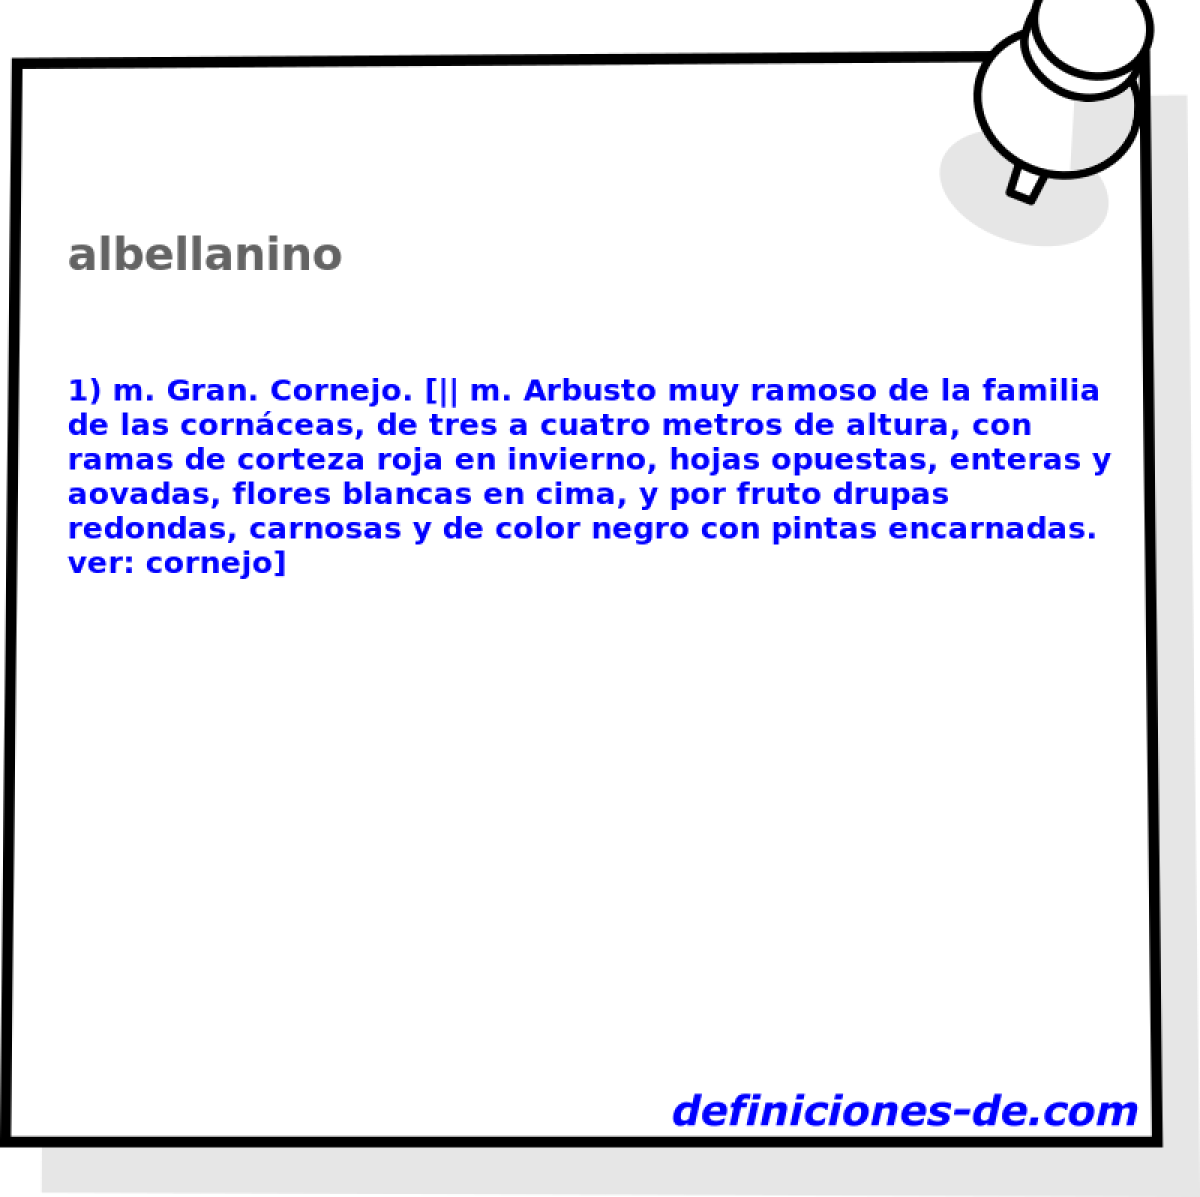 albellanino 